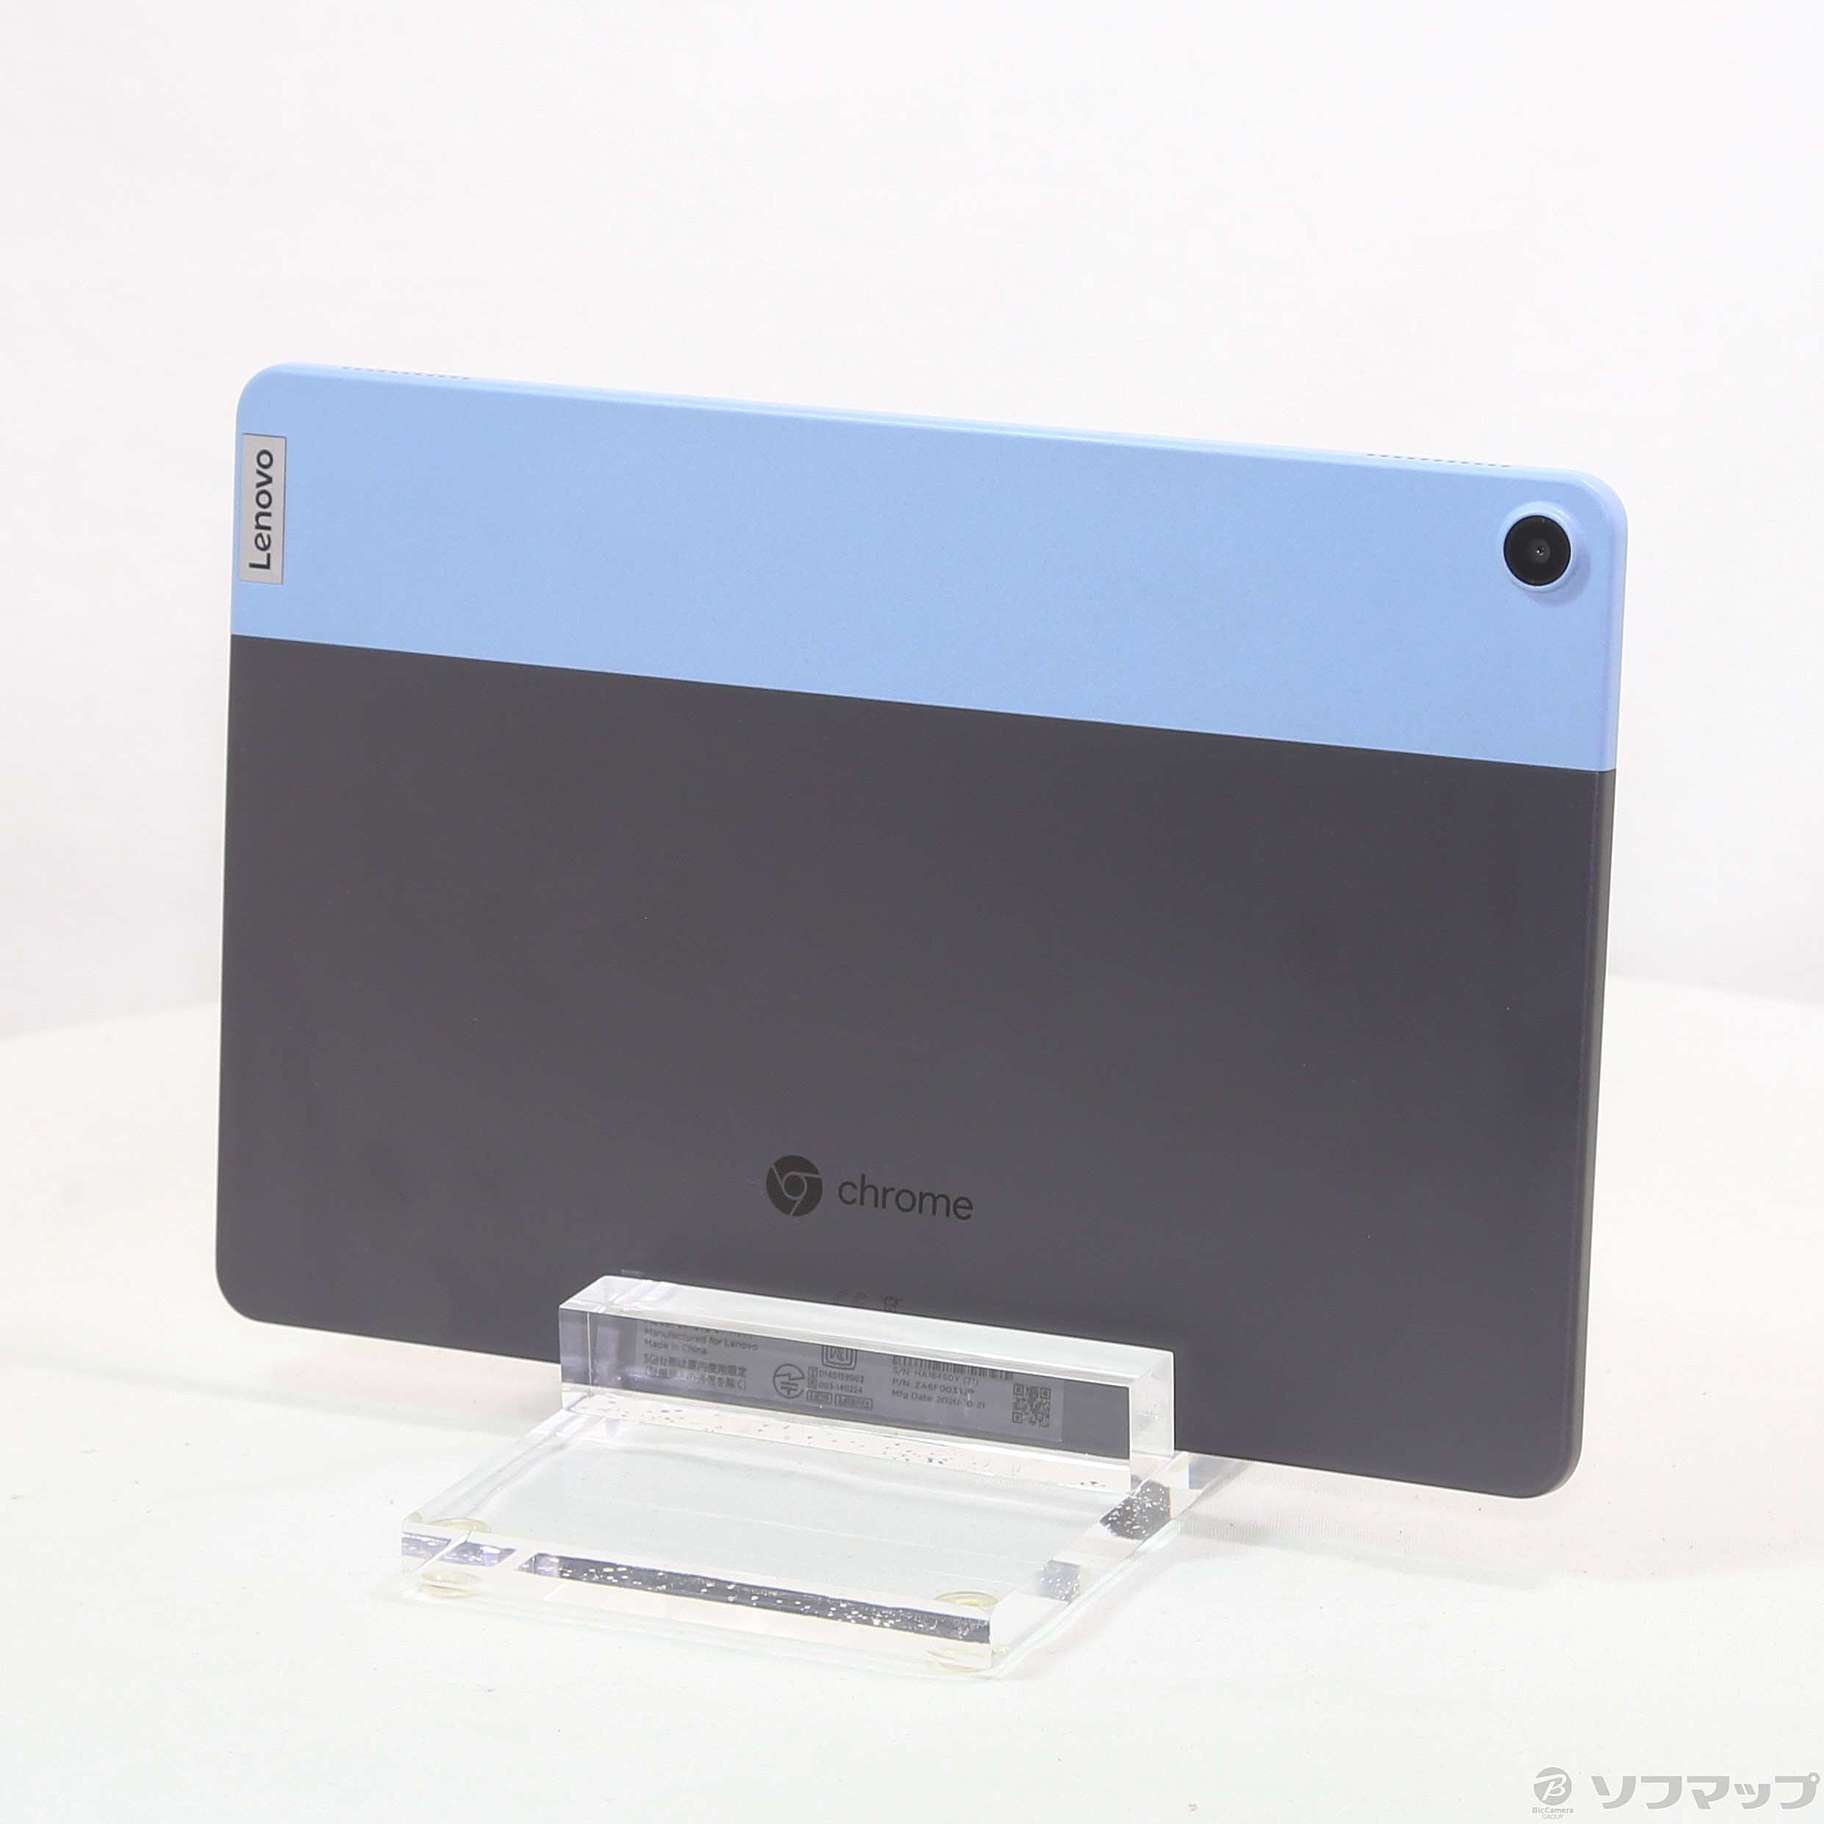 中古品ideapad Duet Chromebook ZA6F0038JP冰蓝色+铁杆灰色|no邮购是